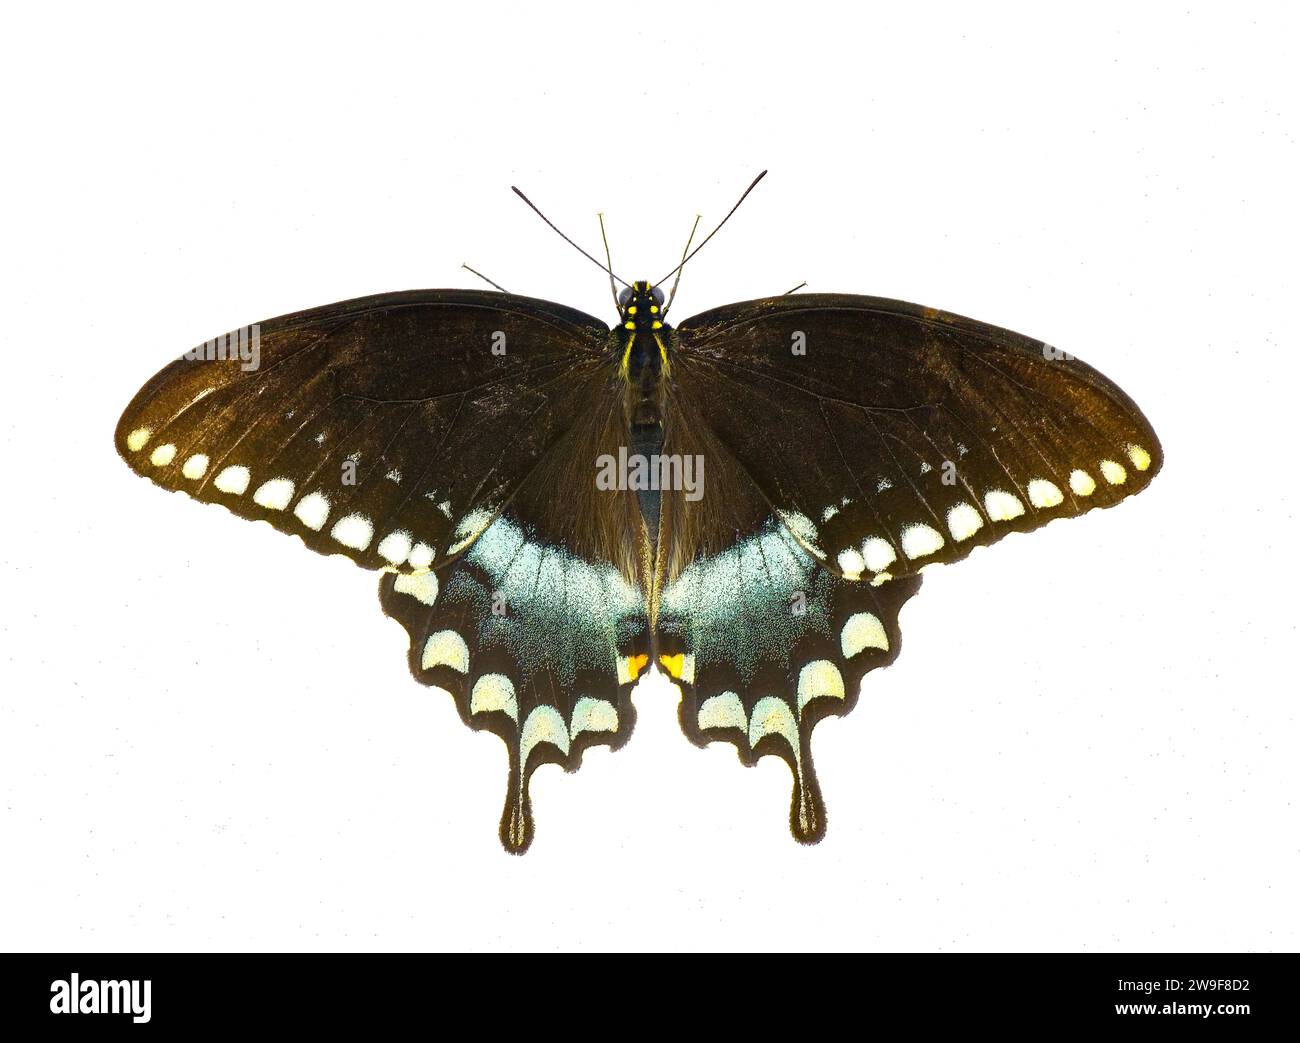 La coda di rondine a coda di rondine o la farfalla nuvolosa verde - Papilio troilus ilioneus - la sottospecie della penisola della Florida isolata su sfondo bianco Foto Stock